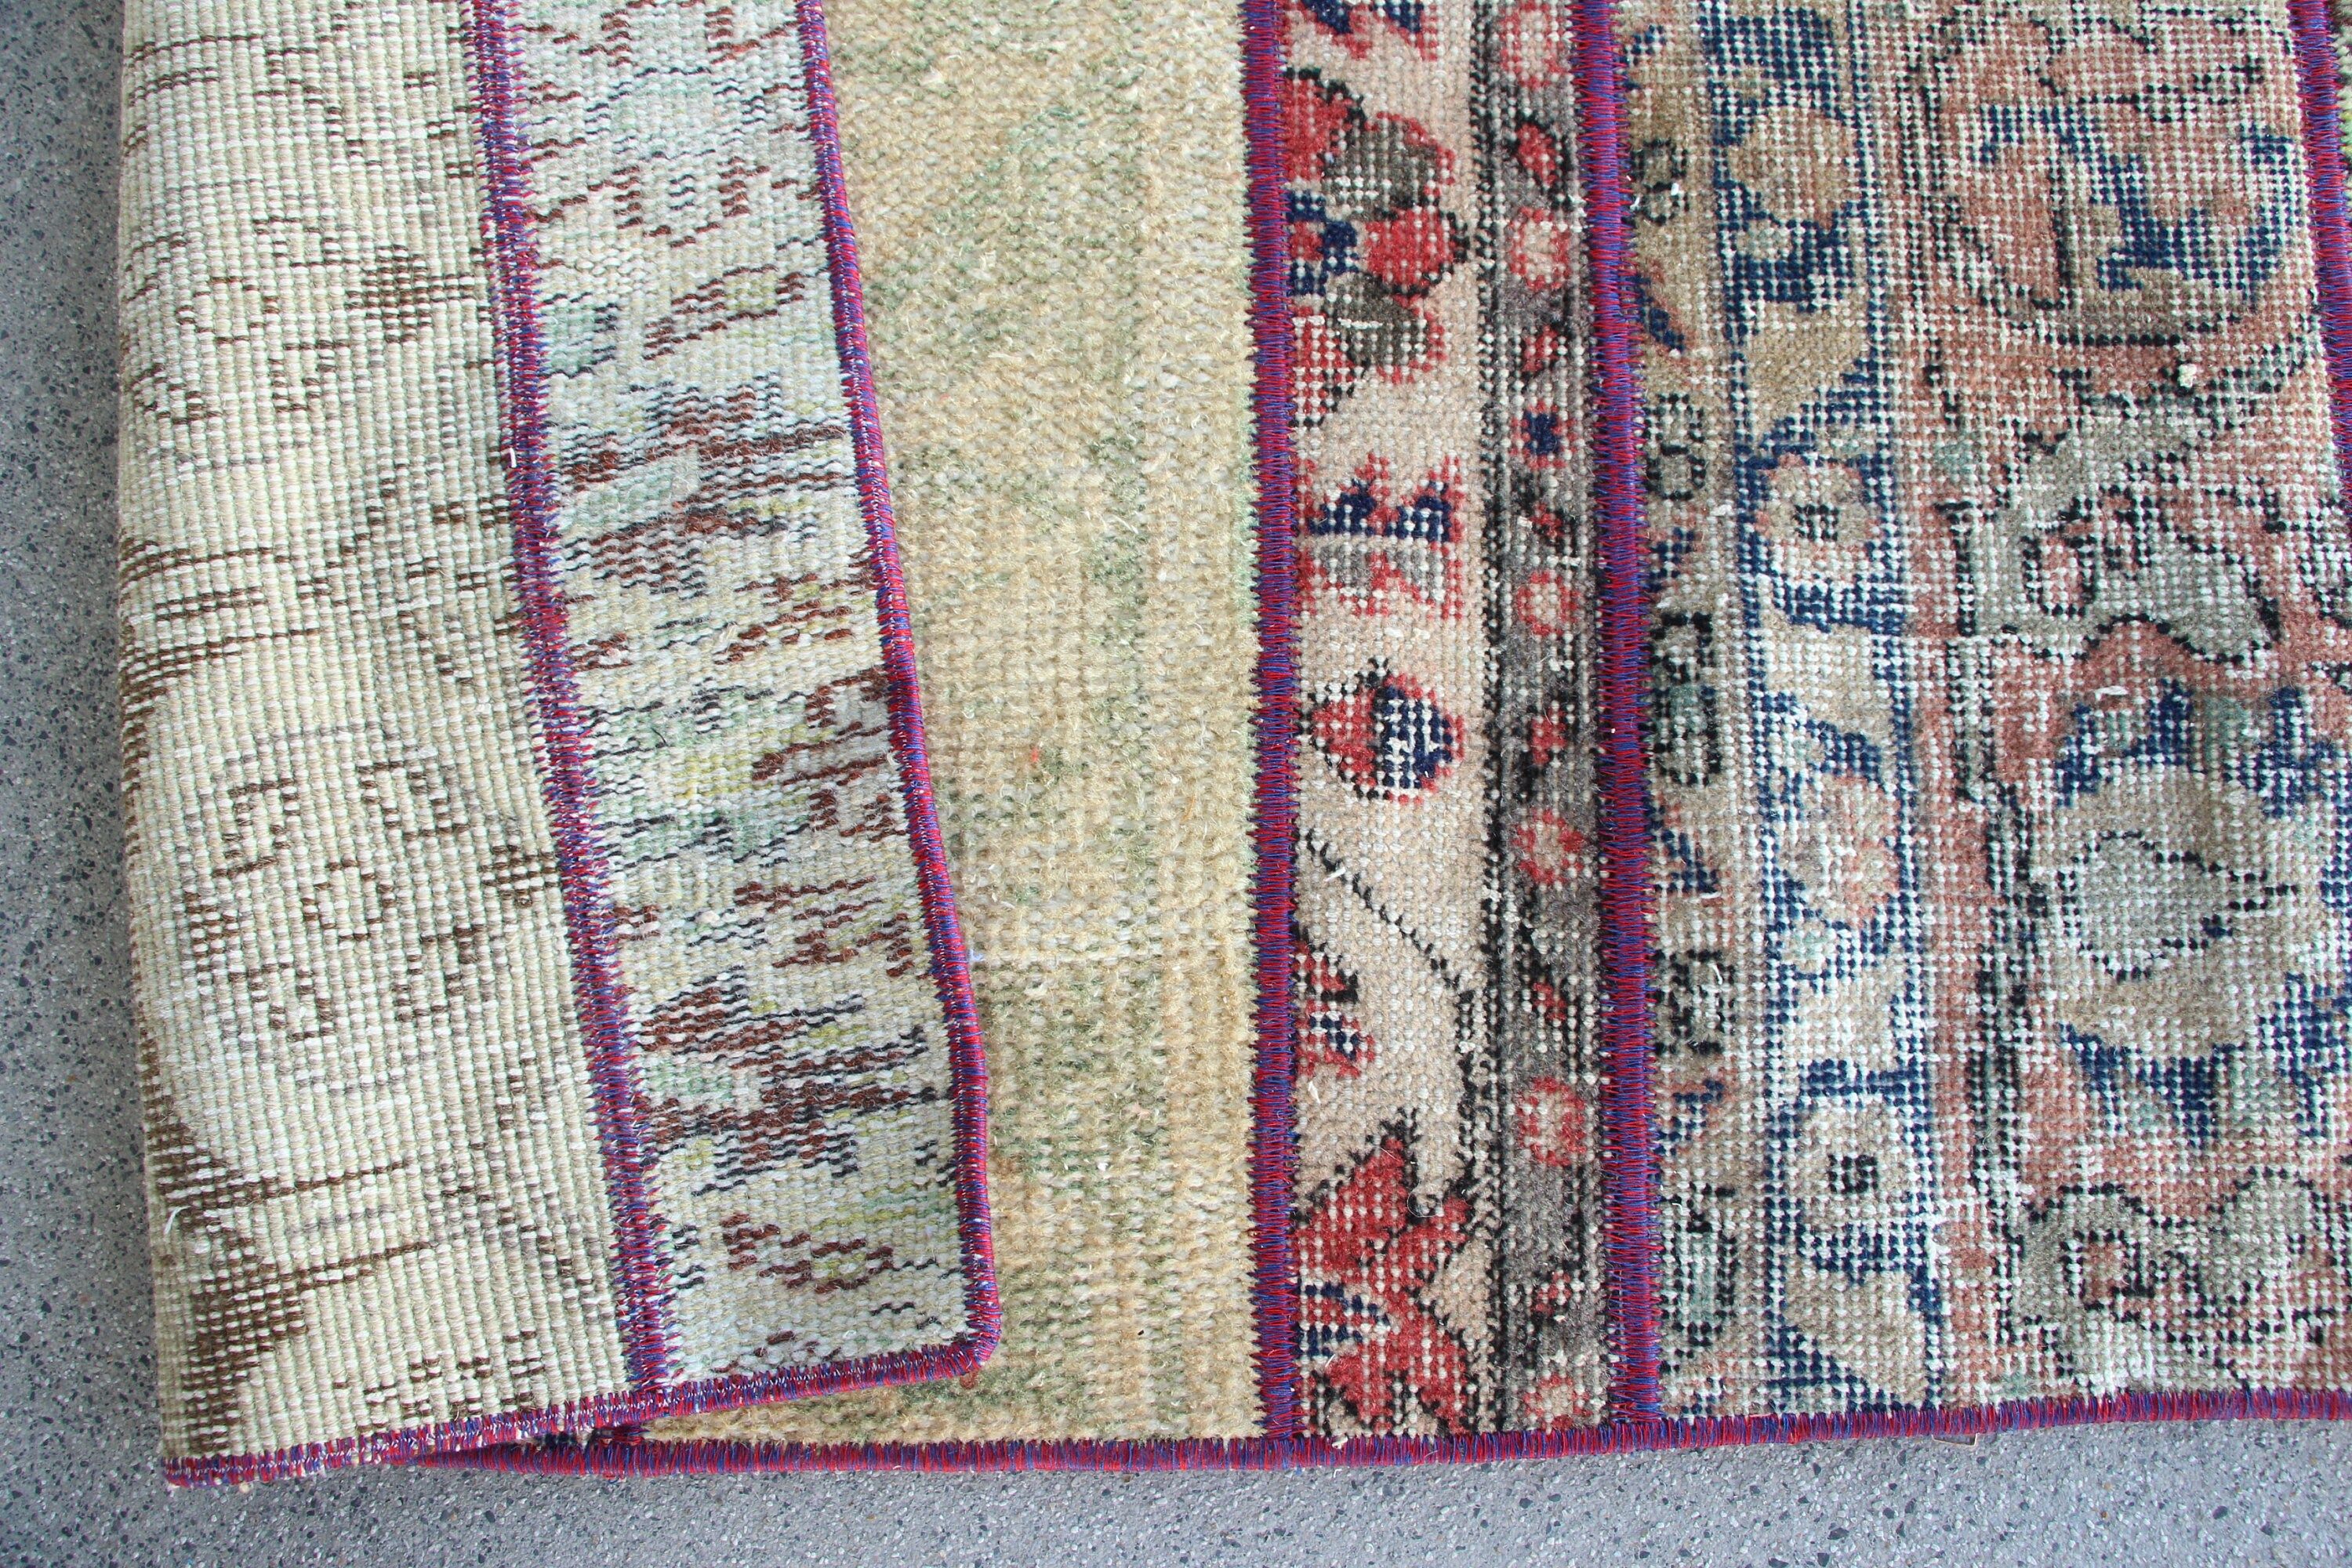 Turkish Rug, Entry Rug, Beige Kitchen Rug, Bedroom Rug, Rugs for Nursery, Vintage Rug, 3.2x5.7 ft Accent Rugs, Moroccan Rug, Wool Rugs